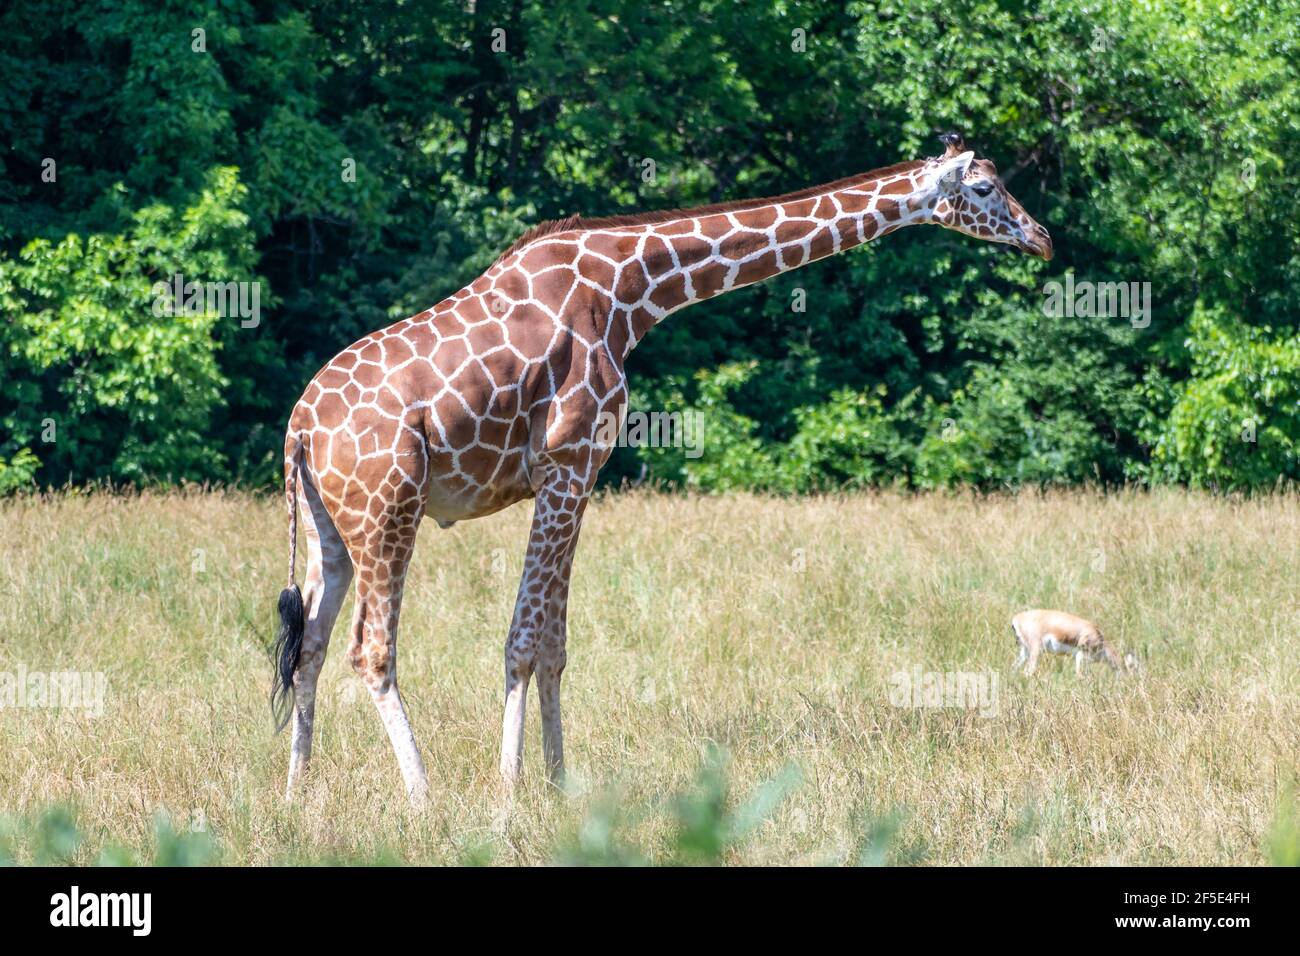 Ripresa di una giraffa e di un altro animale in piedi nello spazio aperto di fronte agli alberi fitti. Foto Stock